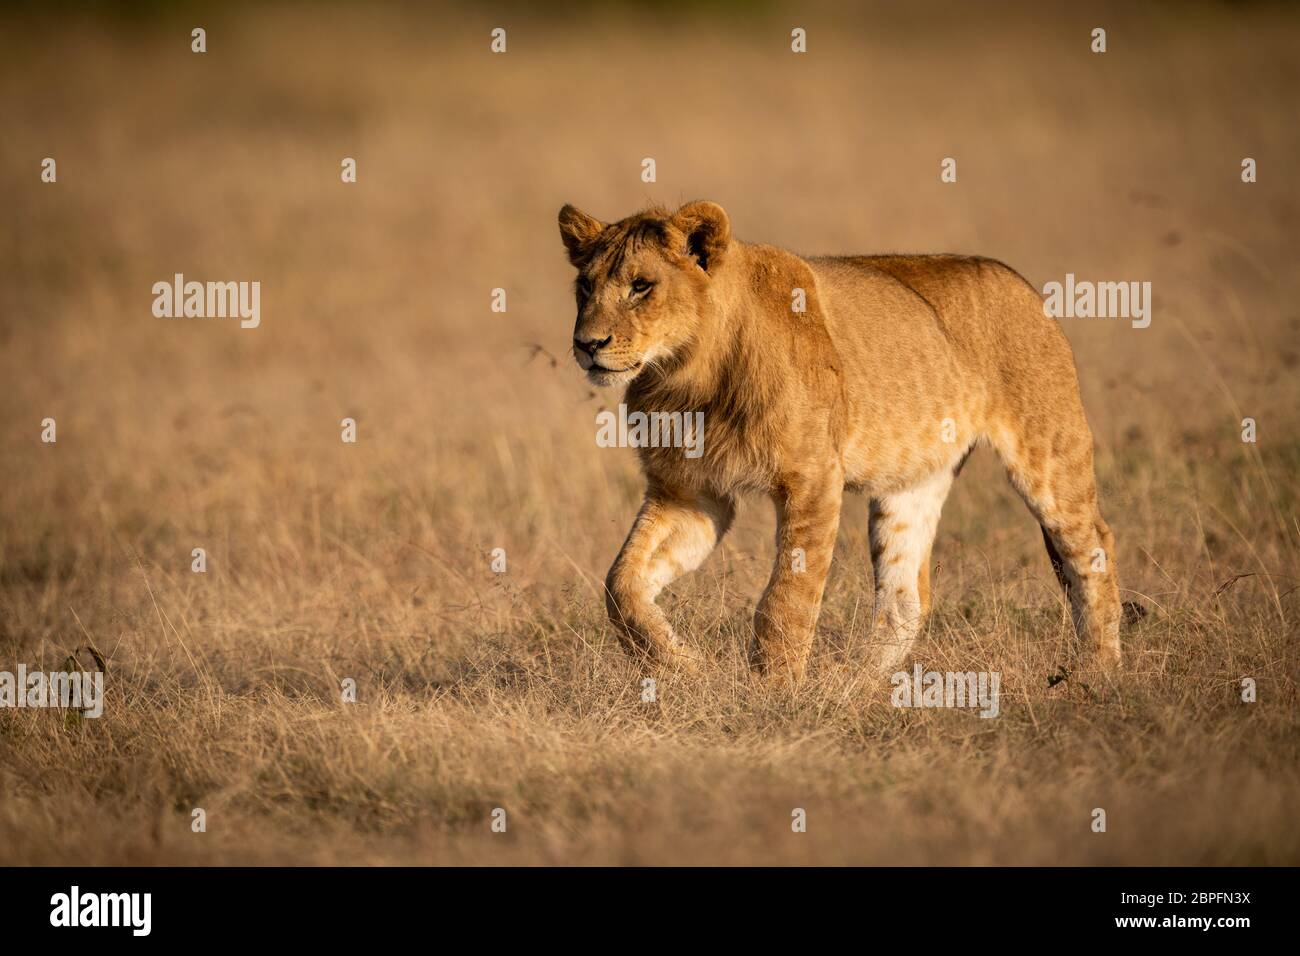 León macho joven camina en la luz de oro Foto de stock